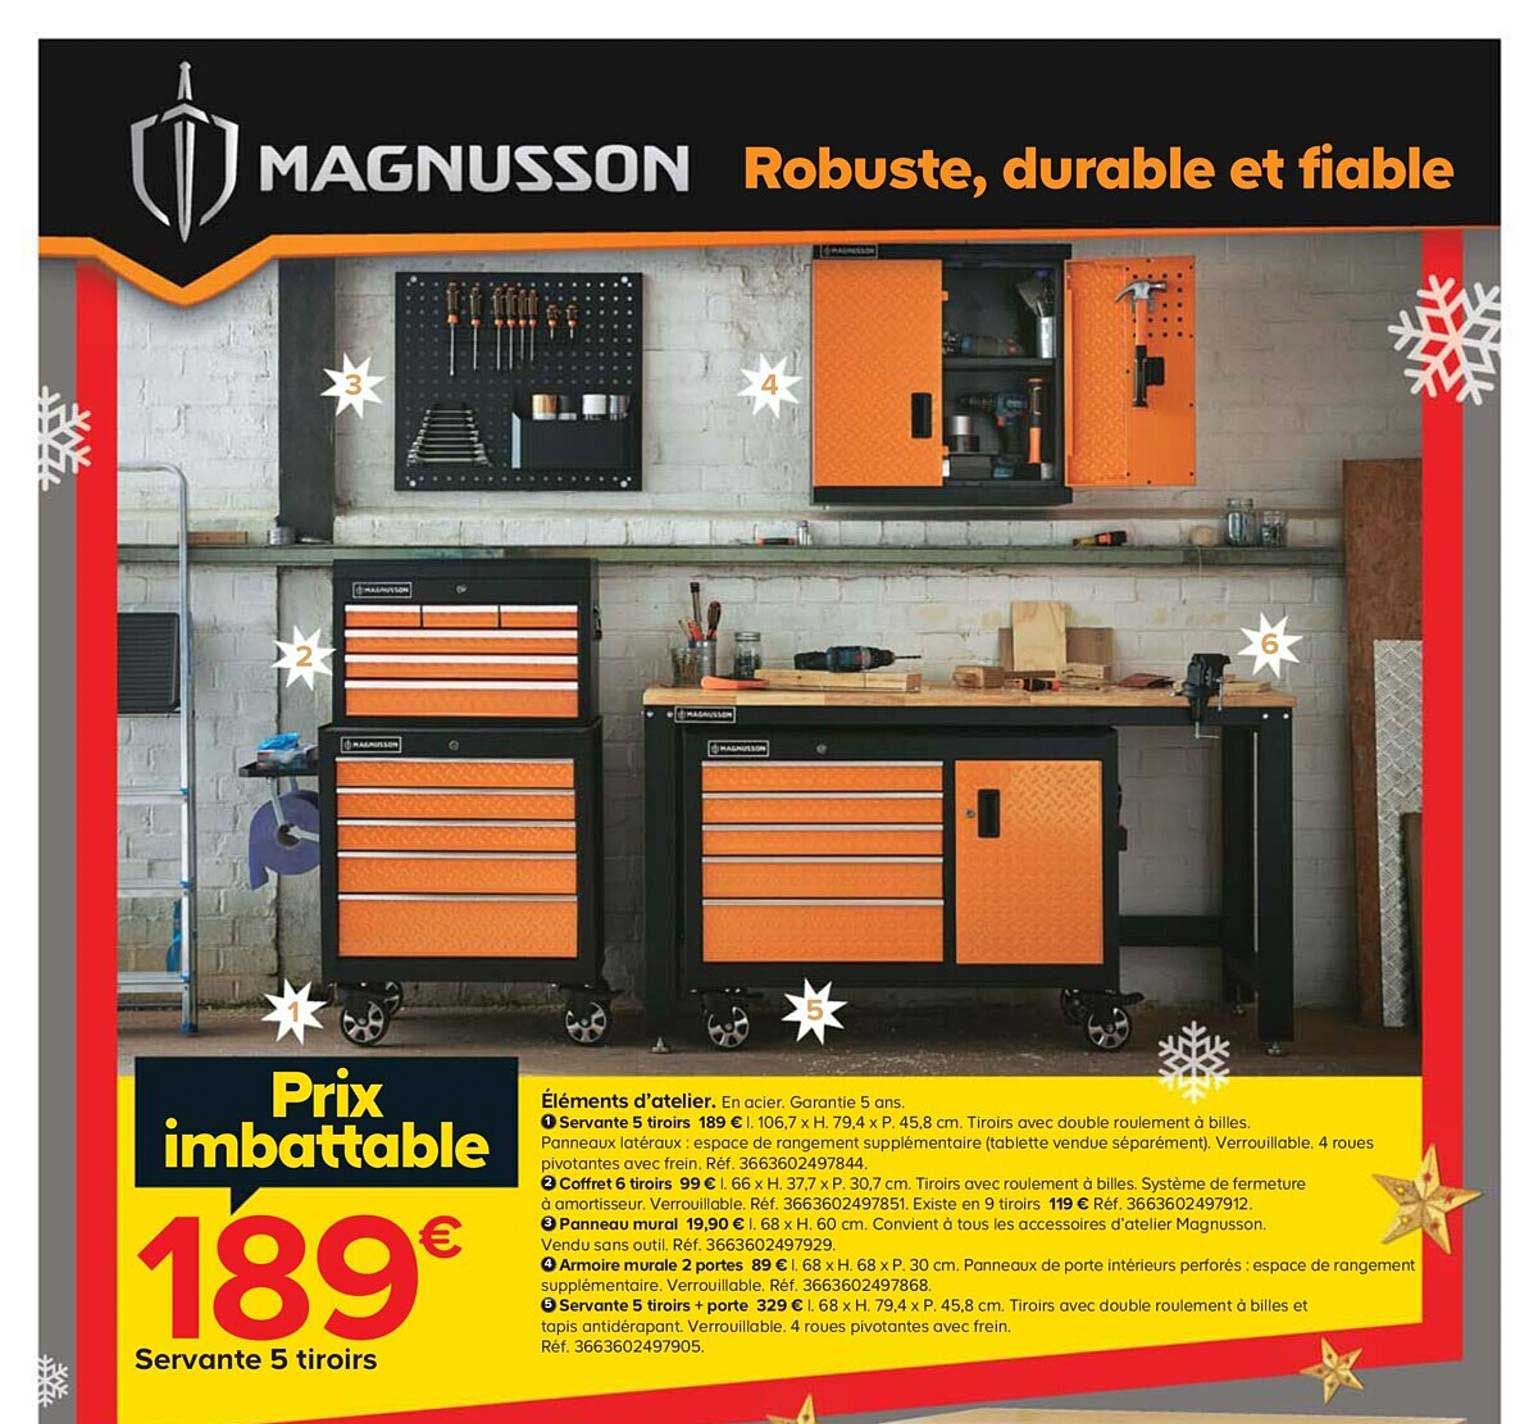 Servante d'atelier verrouillable 5 tiroirs Magnusson